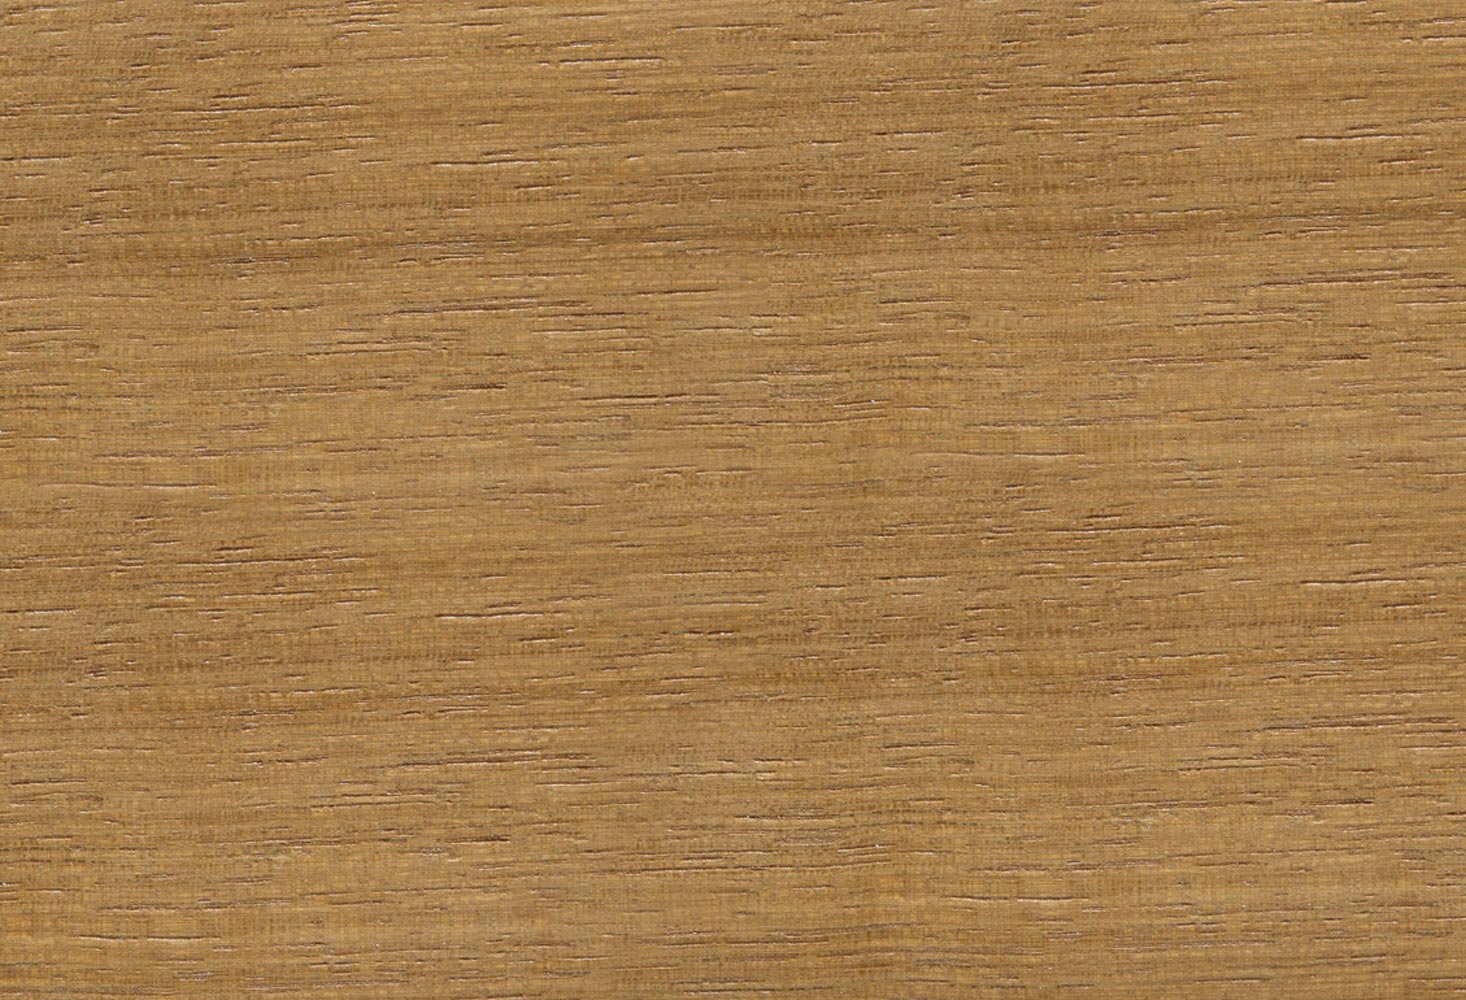 Iroko wood